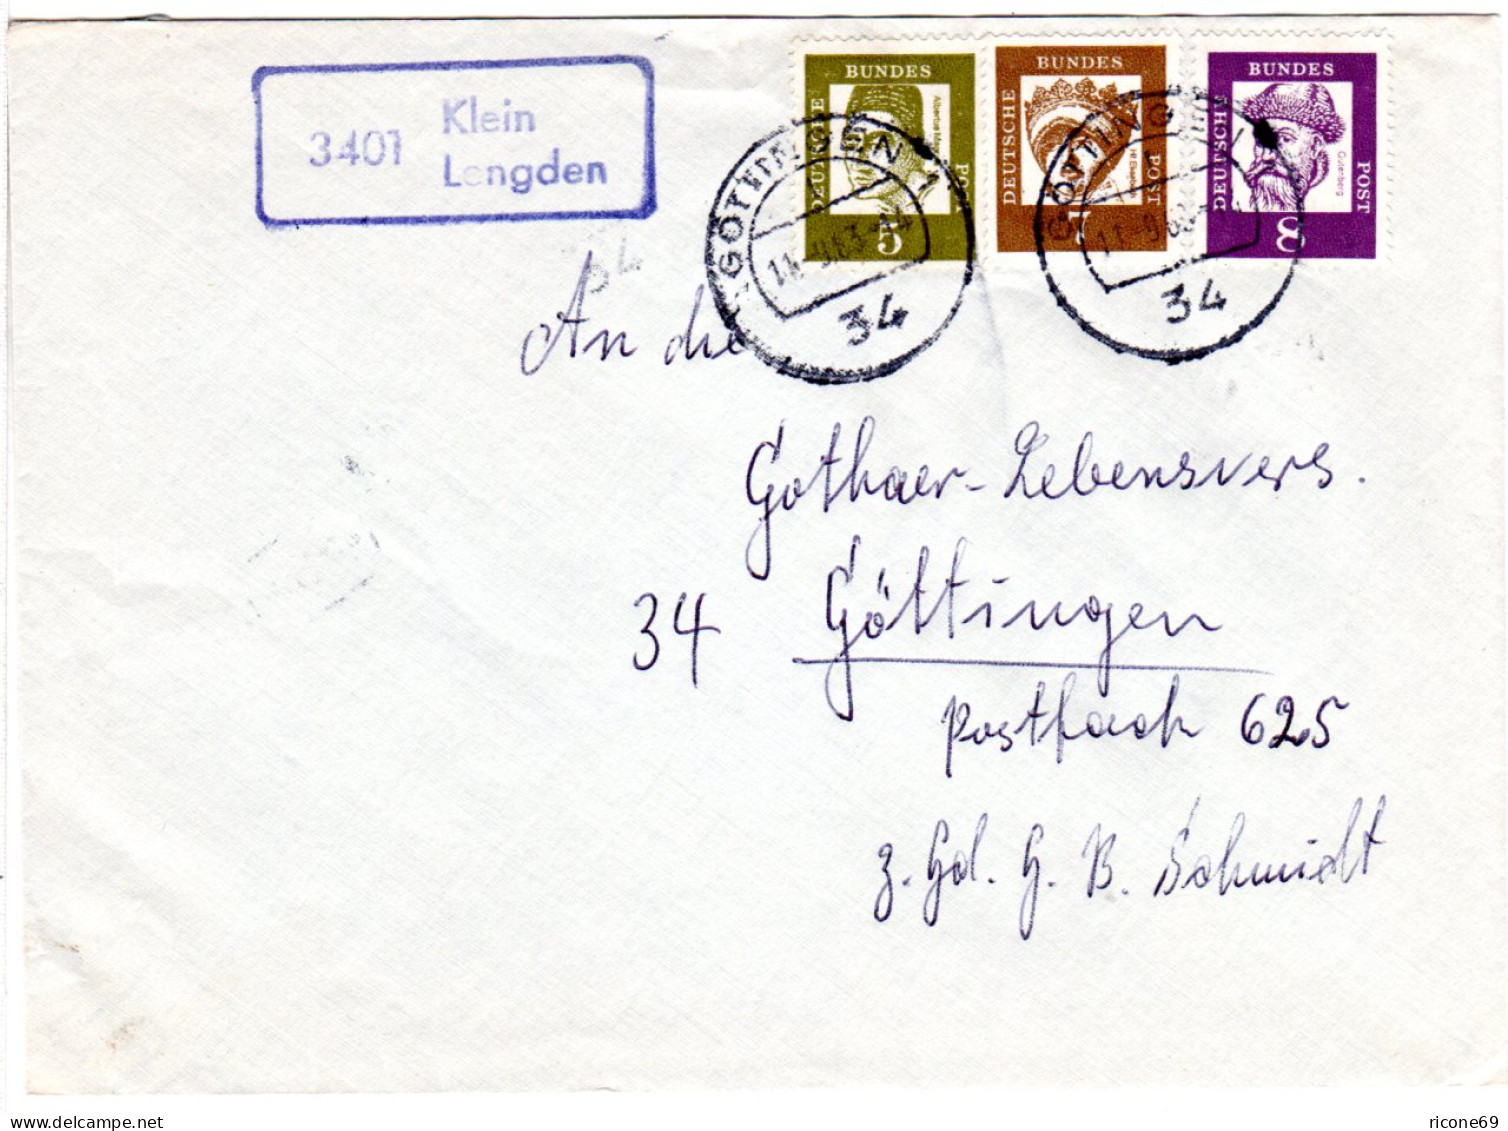 BRD 1963, Landpoststpl. 3401 Klein Lengden Auf Brief M. 5+7+8 Pf Gest. Göttingen - Storia Postale